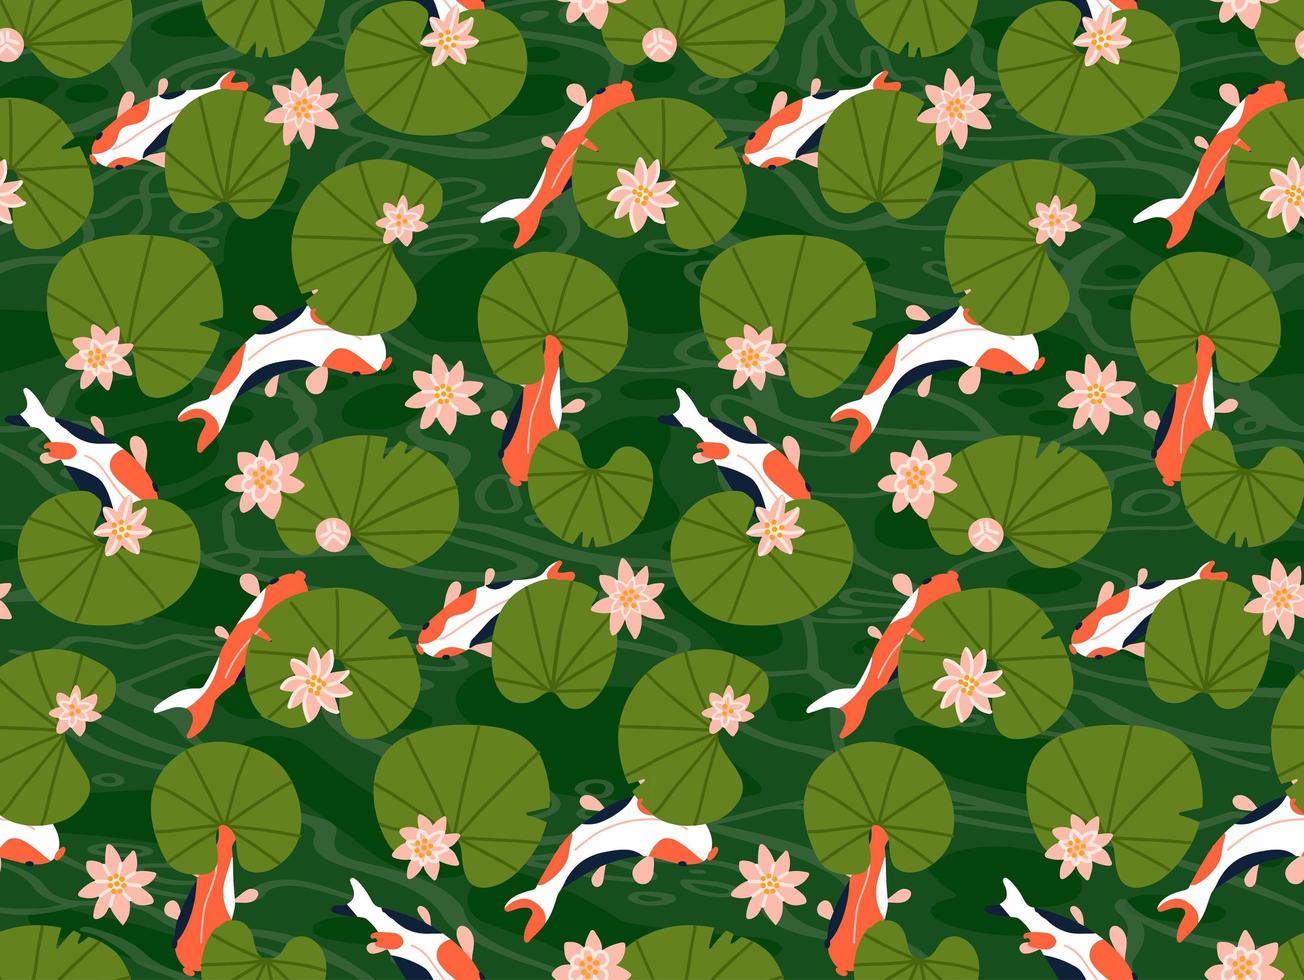 carpe koi pesci sotto foglie di loto verde senza cuciture illustrazione vettoriale. molti pesci rossi nuotano nello stagno d'acqua. illustrazione vettoriale piatta.